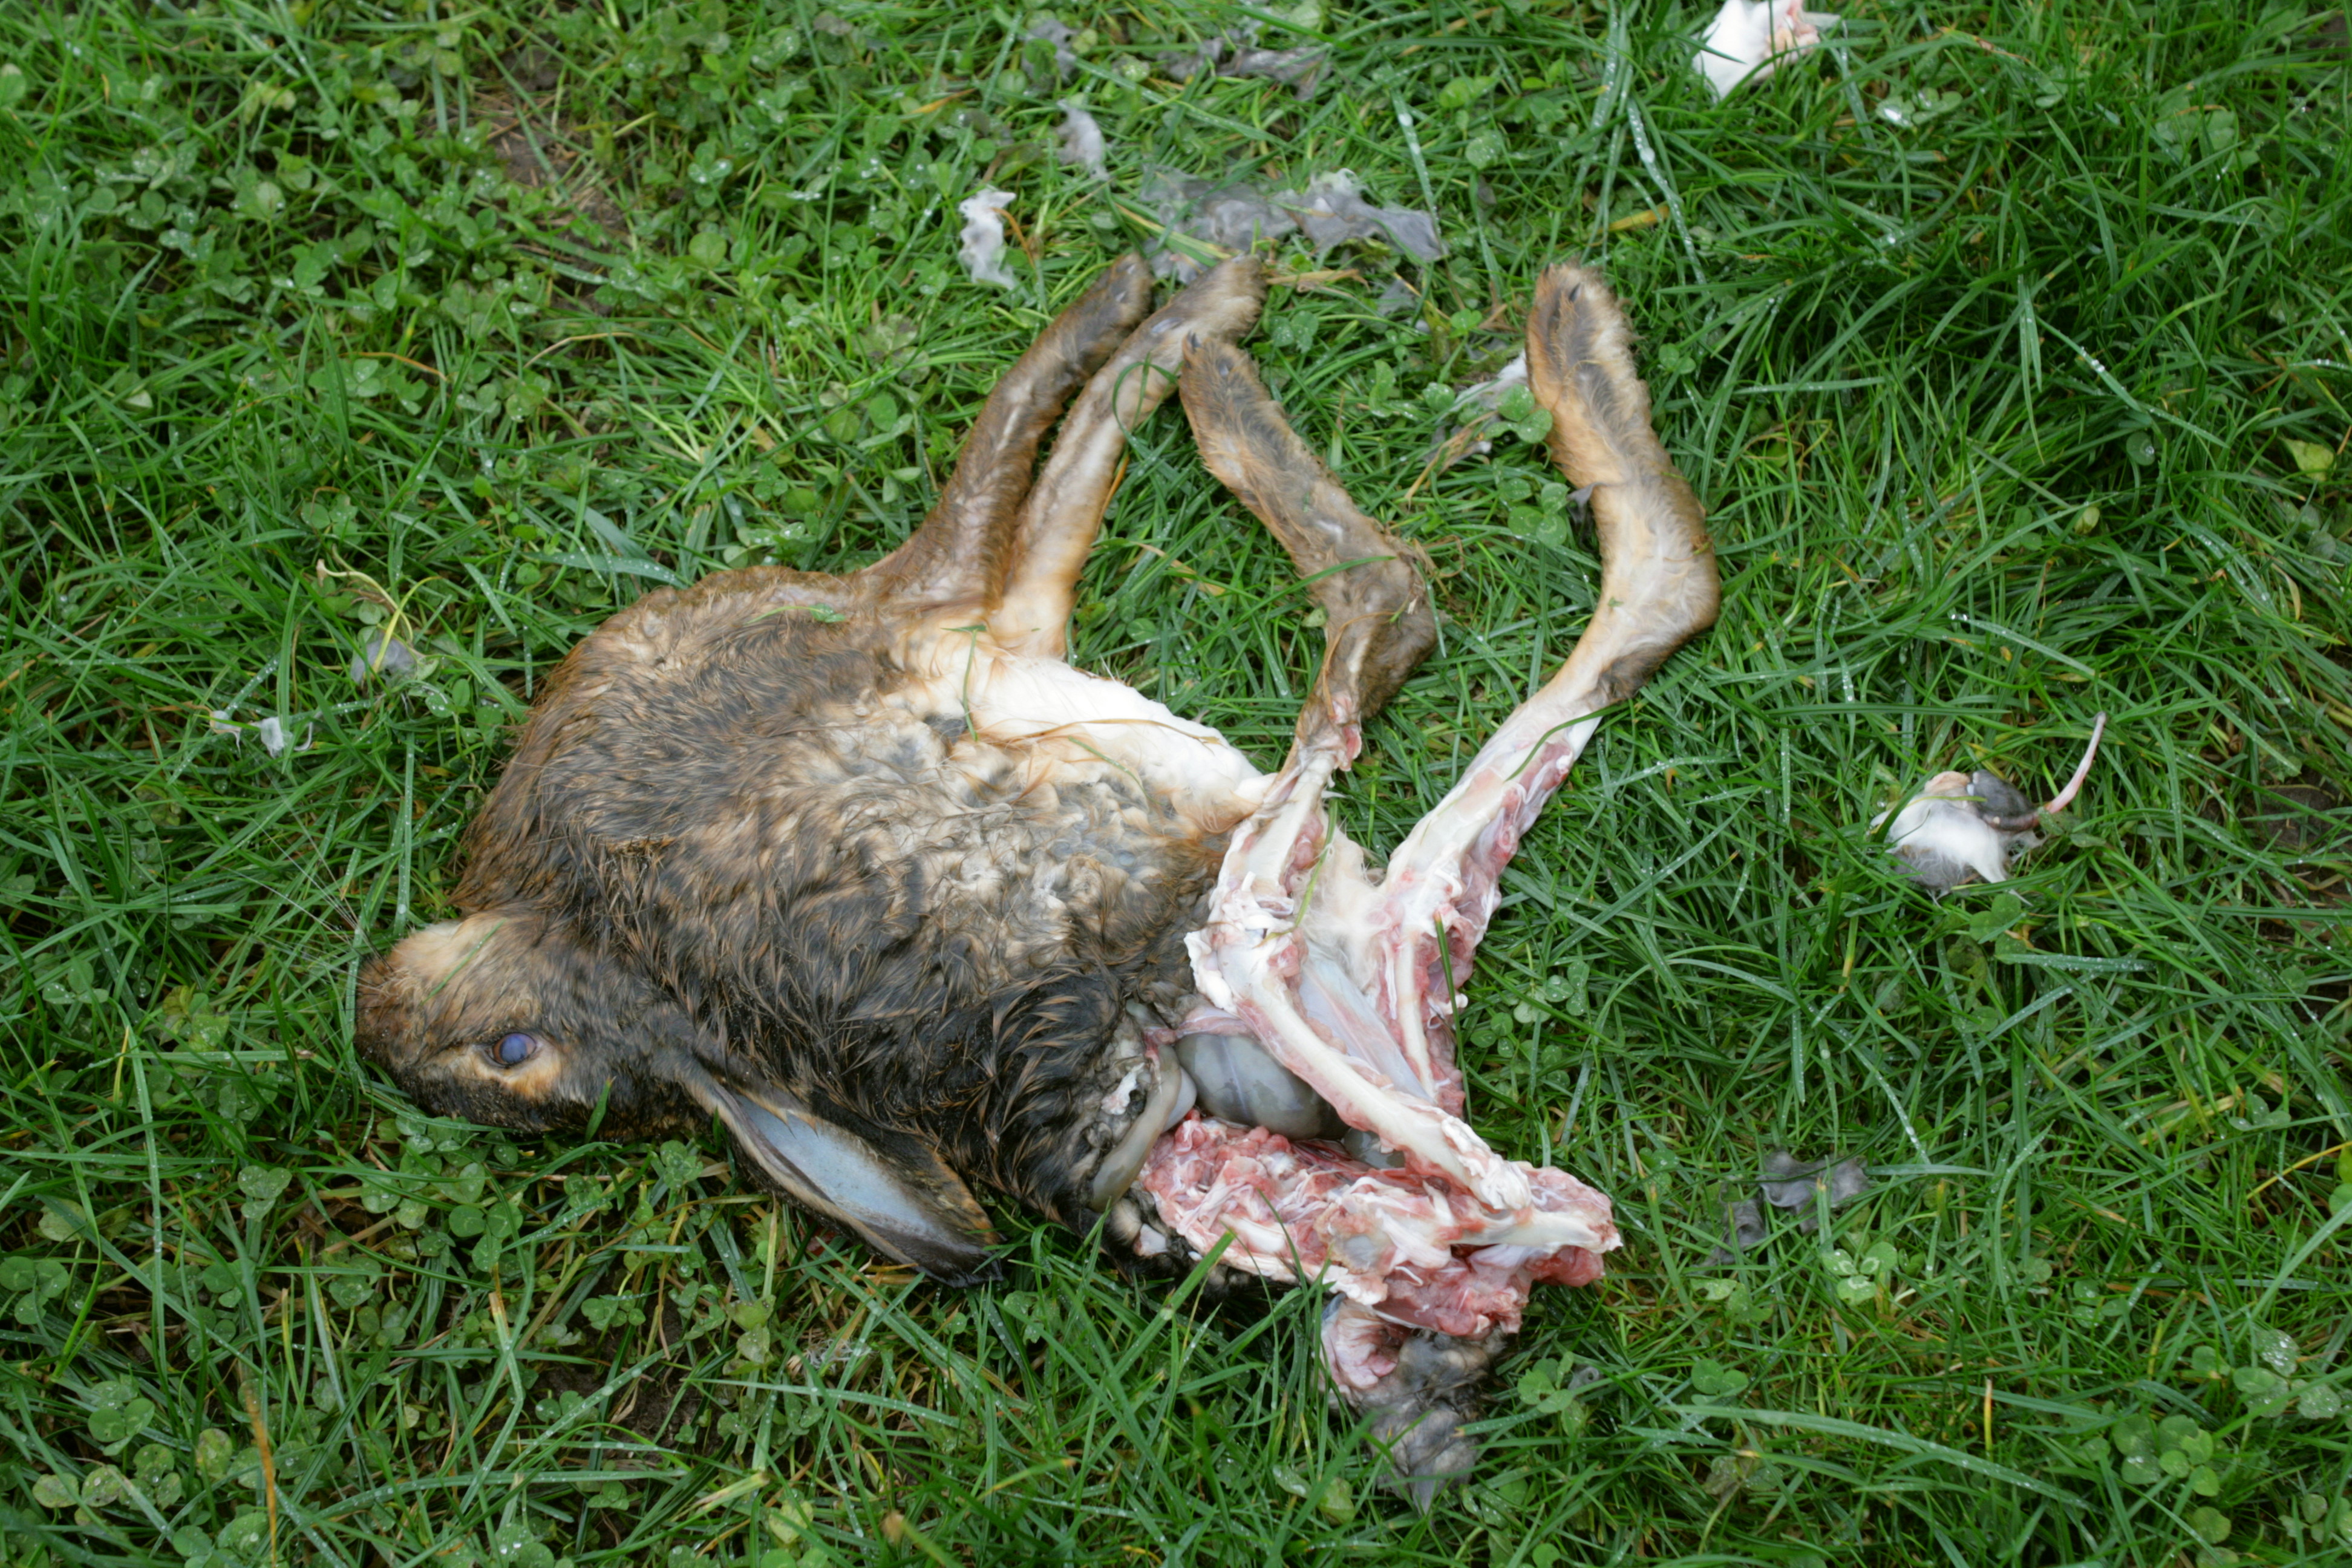 File:Dead rabbit 02 ies.jpg - Wikimedia Commons